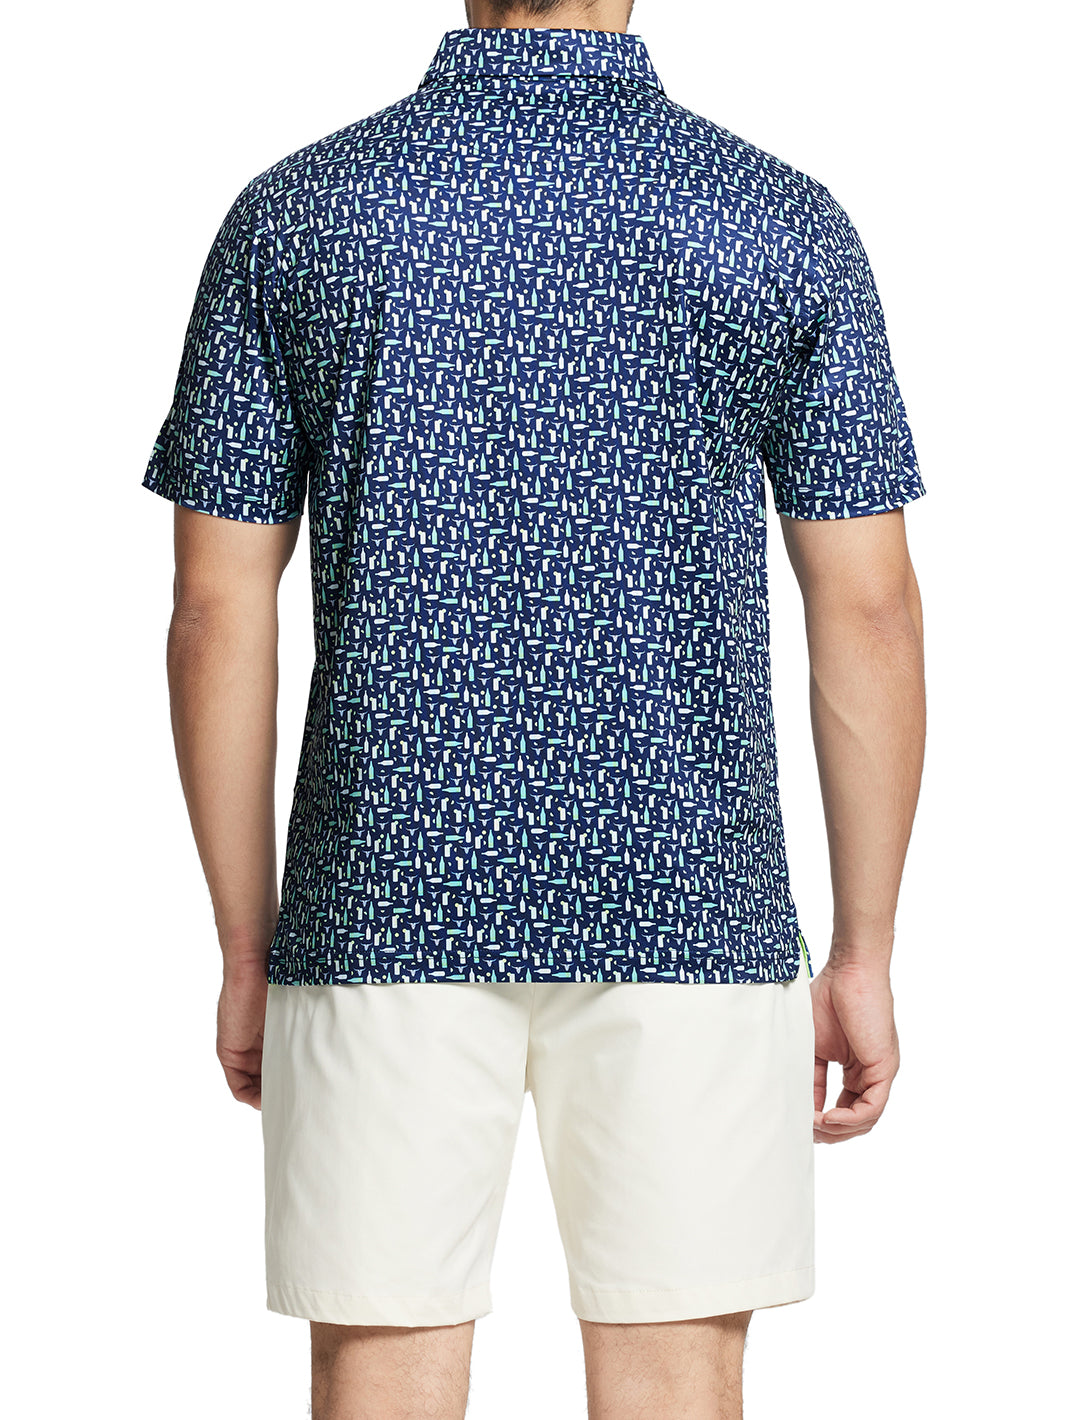 Men's Printed Golf Shirts-Ranch